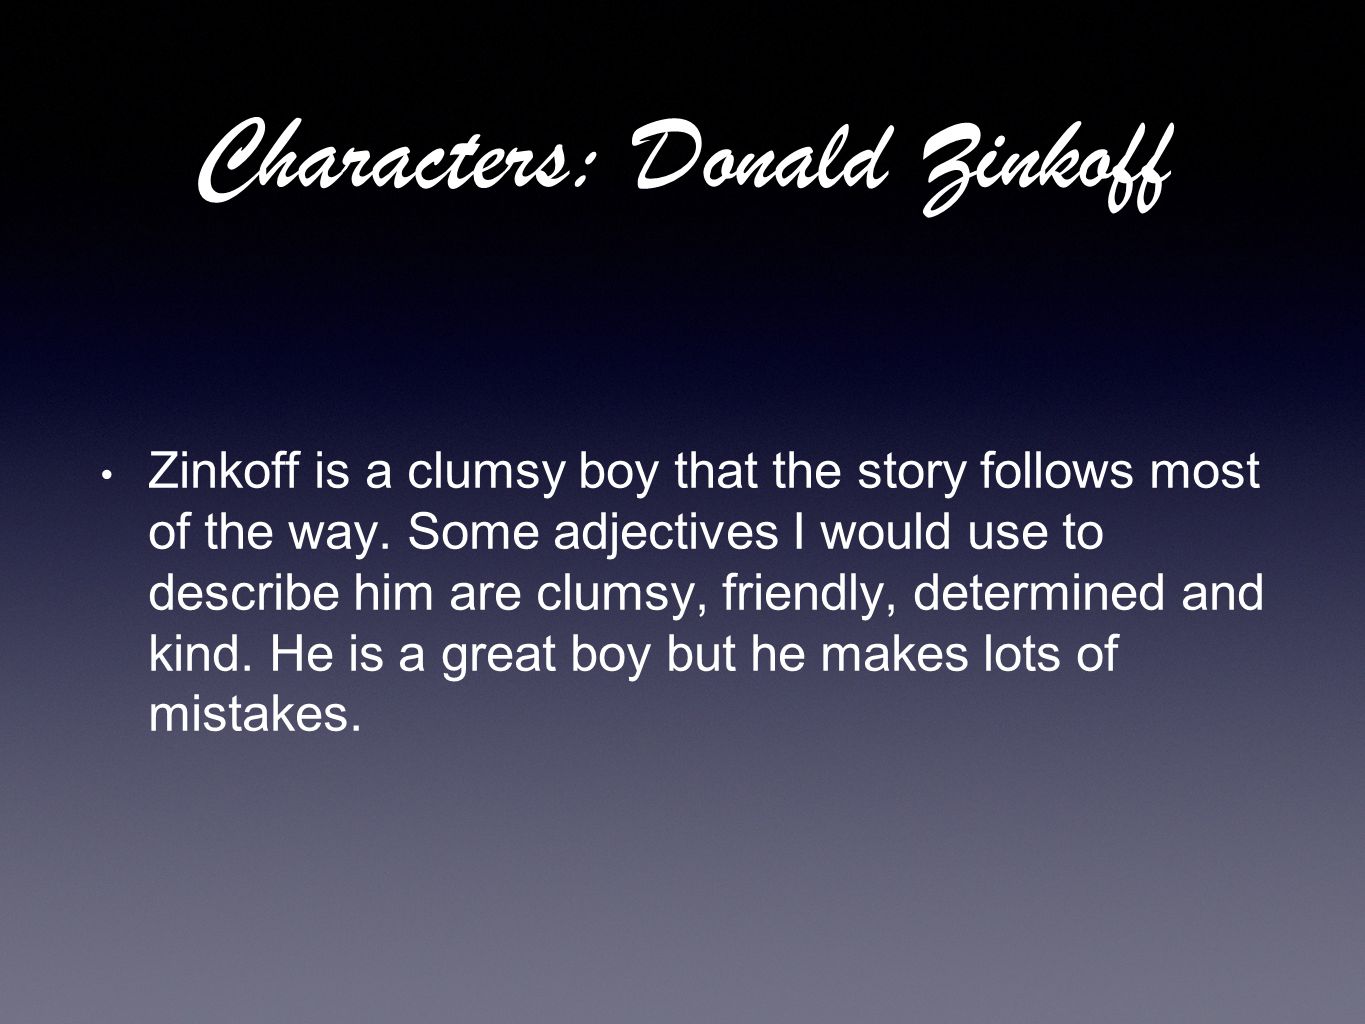 Characters: Donald Zinkoff